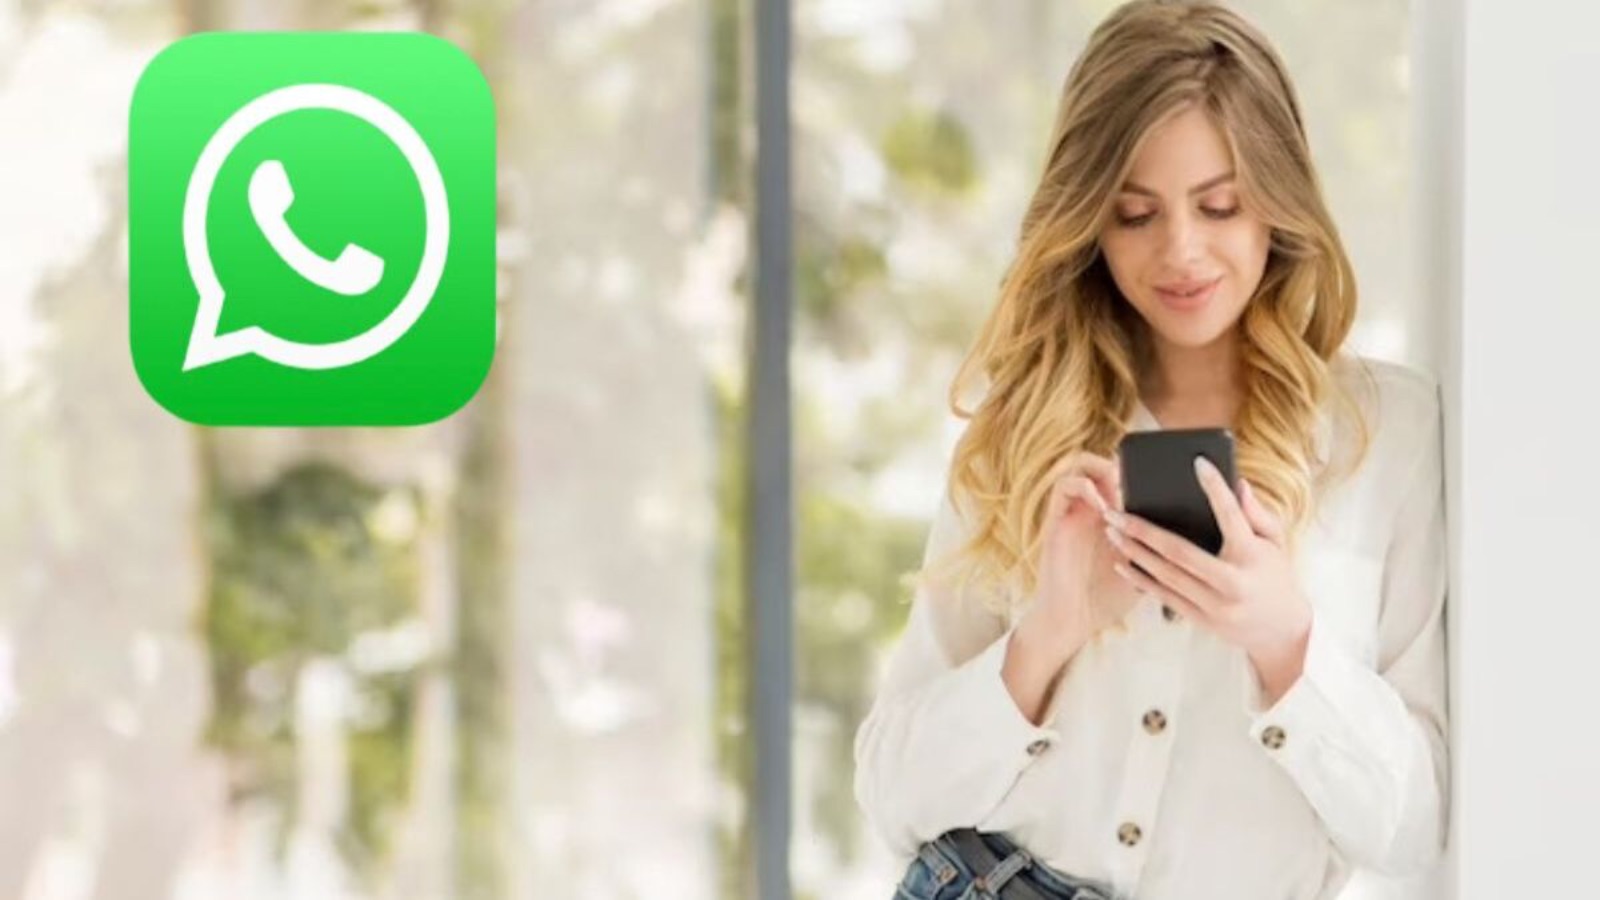 WhatsApp, aggiornamento di novembre con una novità attesissima